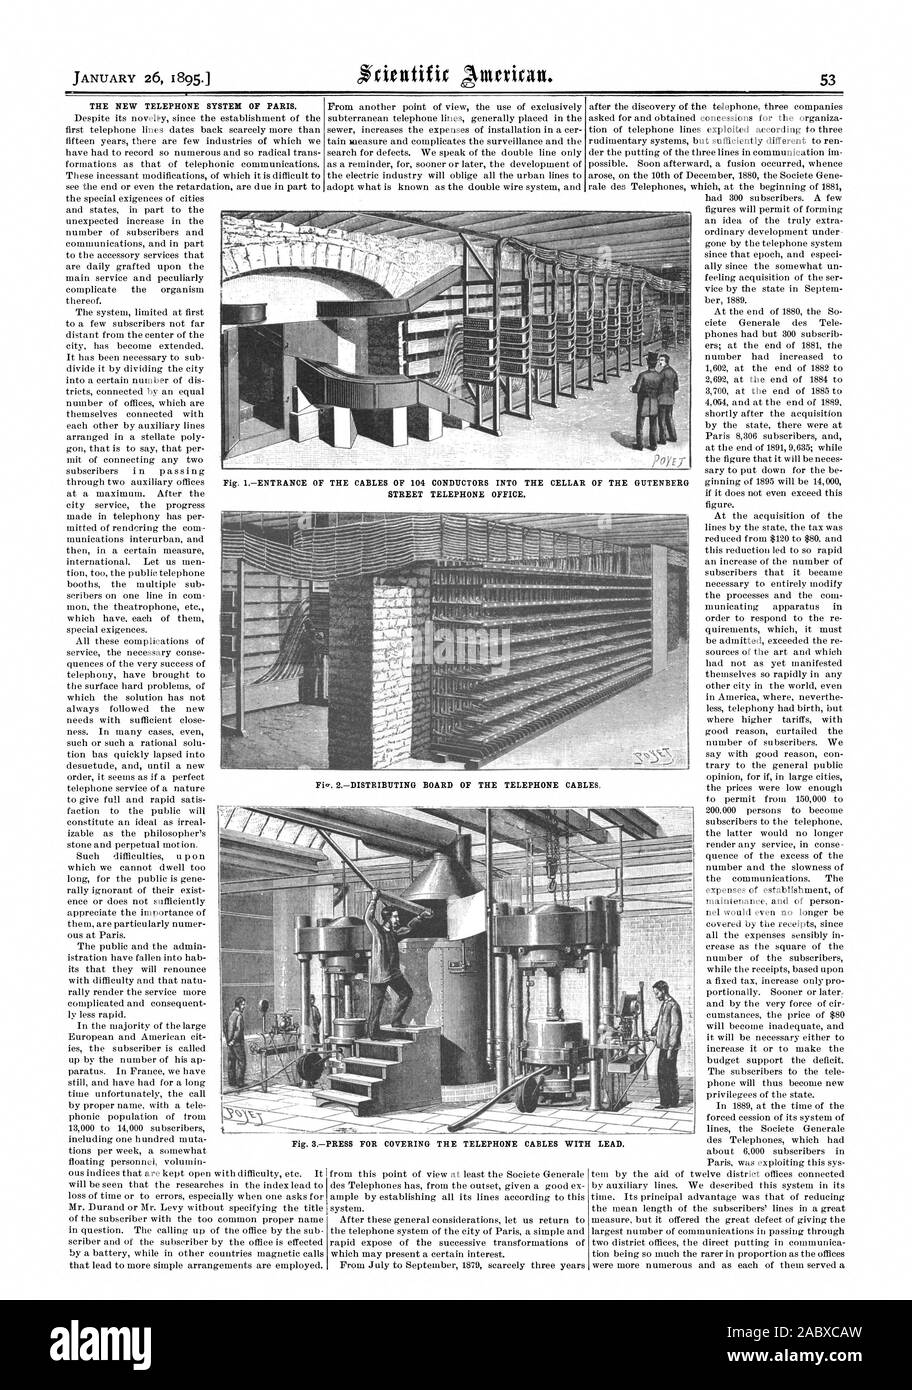 Le NOUVEAU SYSTÈME TÉLÉPHONIQUE DE PARIS. Fig. 3APPUYEZ SUR POUR COUVRIR LES CÂBLES TÉLÉPHONIQUES AVEC PLOMB., Scientific American, 1895-01-26 Banque D'Images